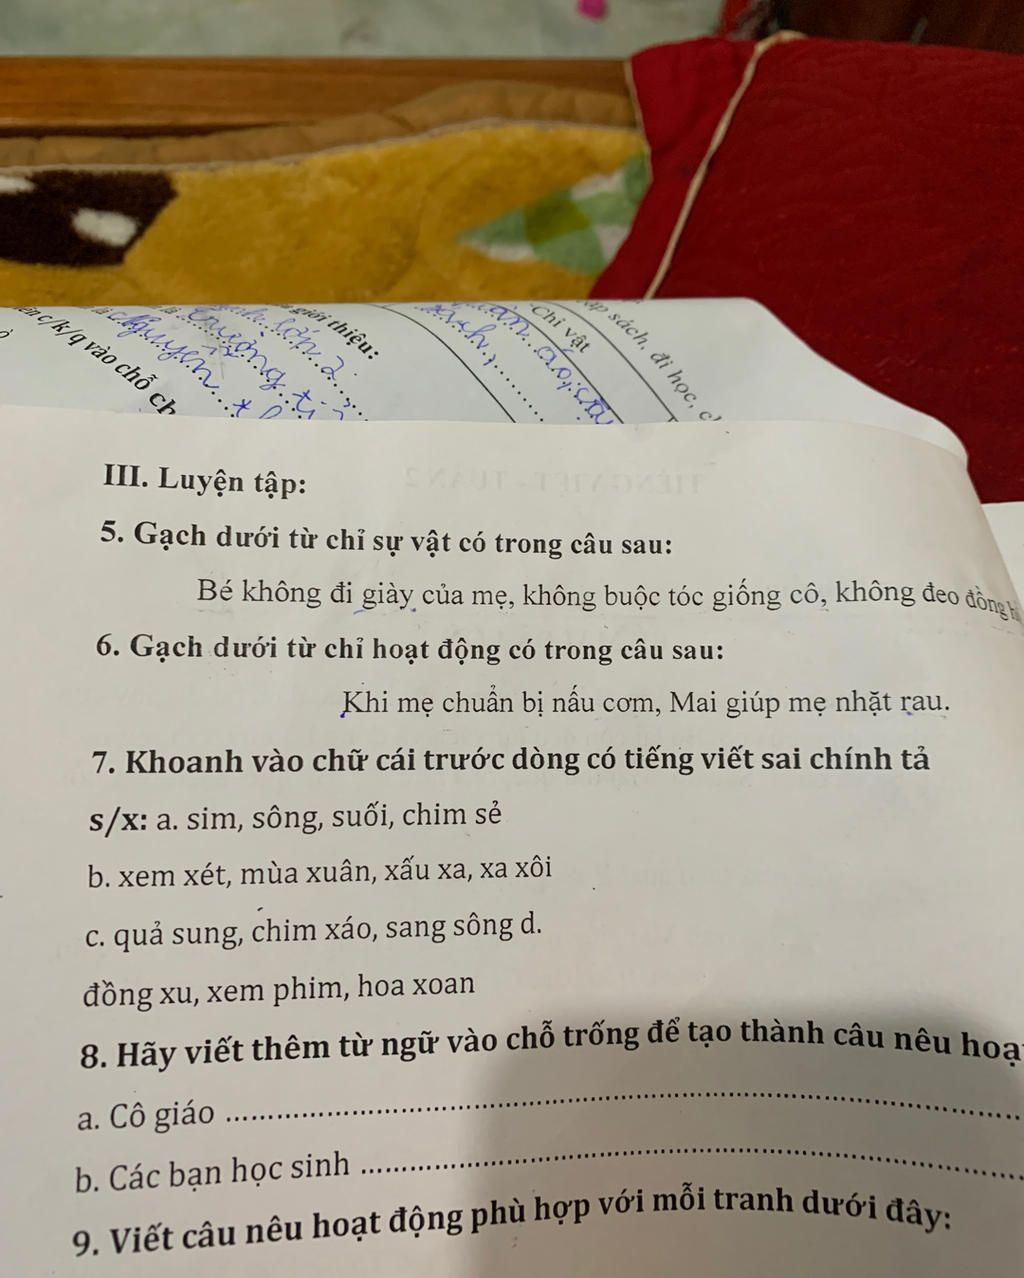 Tại sao việc thực hiện gạch dưới từ chỉ sự vật trong câu có thể giúp nâng cao kỹ năng đọc hiểu và tiếng Việt?